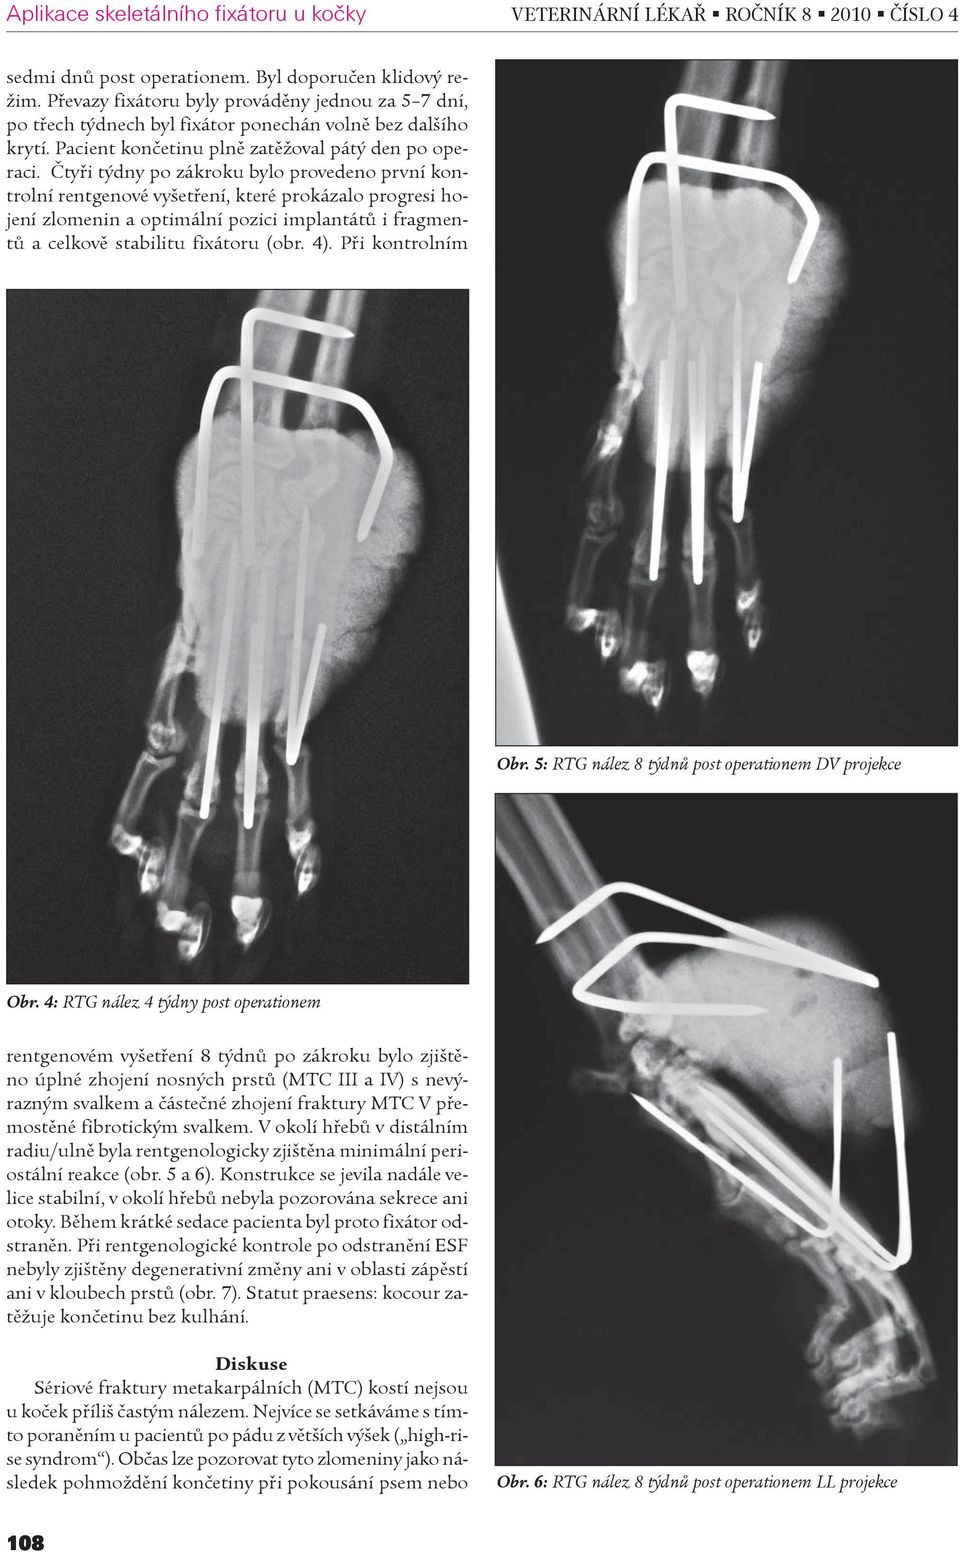 Ètyøi týdny po zákroku bylo provedeno první kontrolní rentgenové vyšetøení, které prokázalo progresi hojení zlomenin a optimální pozici implantátù i fragmentù a celkovì stabilitu fixátoru (obr. 4).